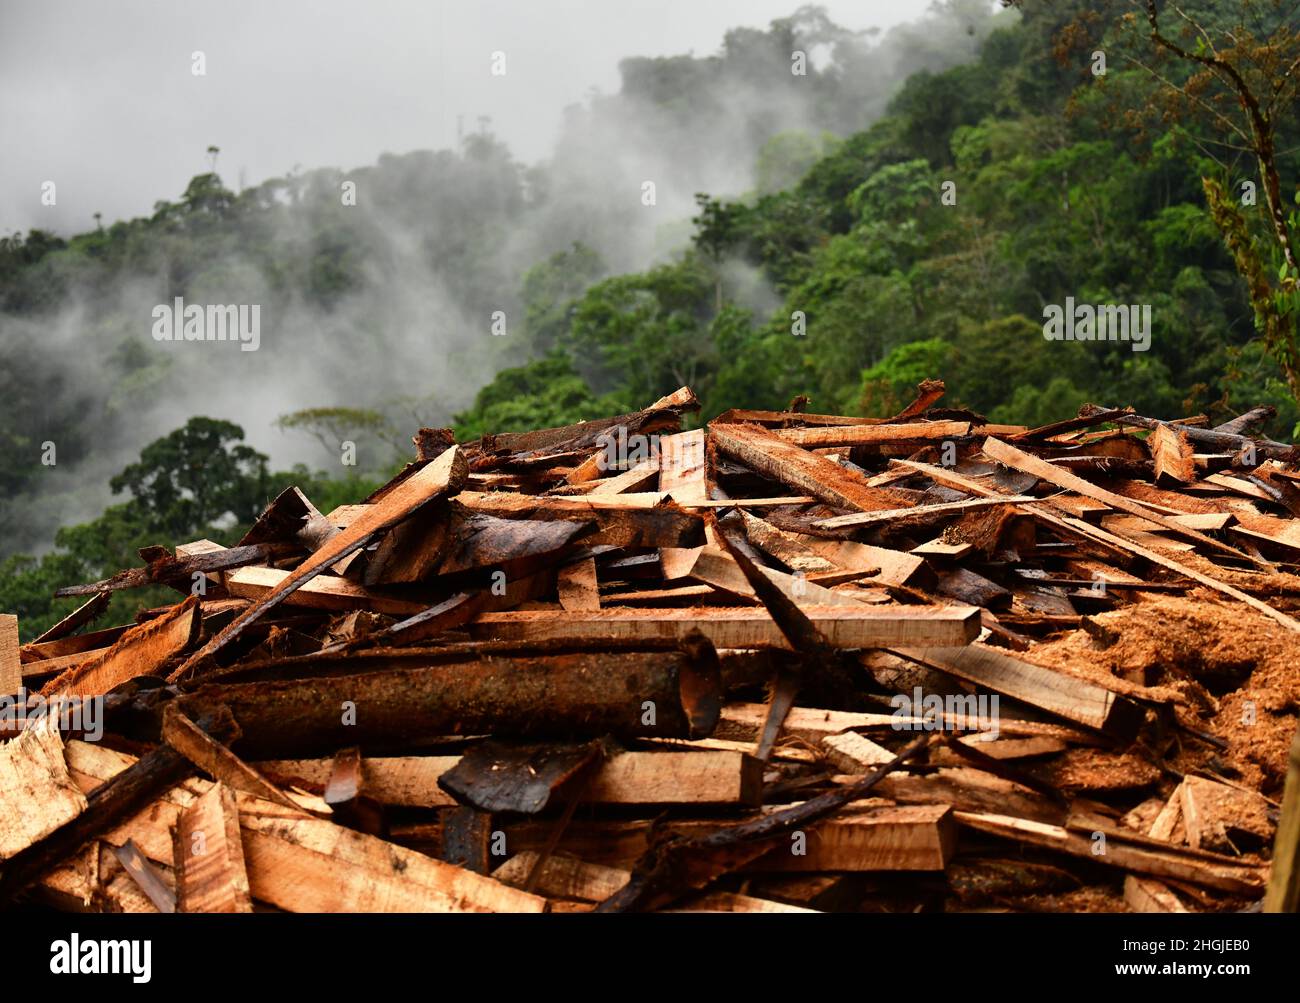 Un site d'exploitation forestière dans la forêt tropicale.Des feuillus matures ont été abattus.Colombie, Amérique du Sud Banque D'Images